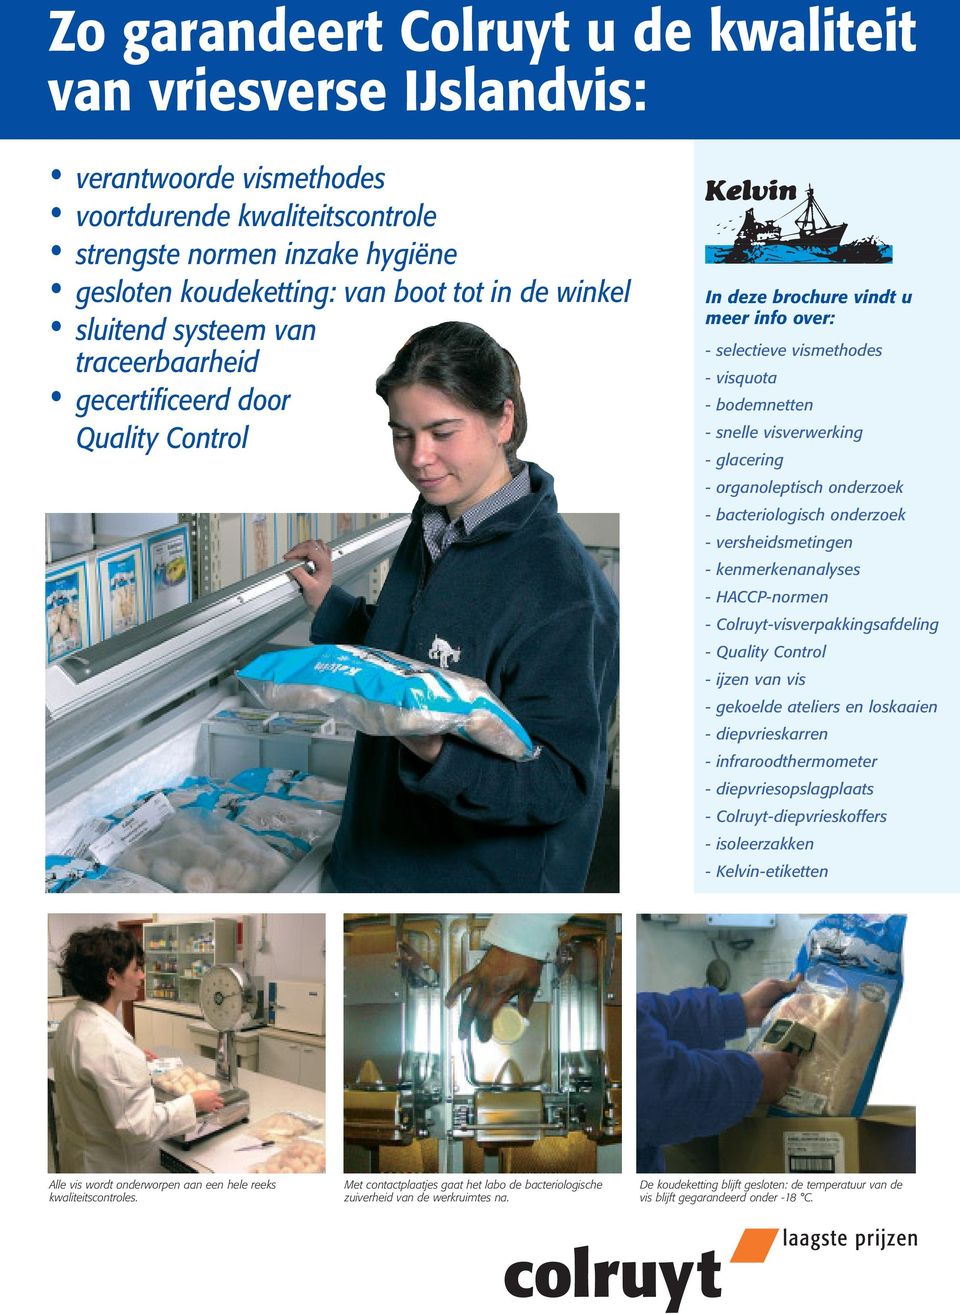 glacering - organoleptisch onderzoek - bacteriologisch onderzoek - versheidsmetingen - kenmerkenanalyses - HACCP-normen - Colruyt-visverpakkingsafdeling - Quality Control - ijzen van vis - gekoelde